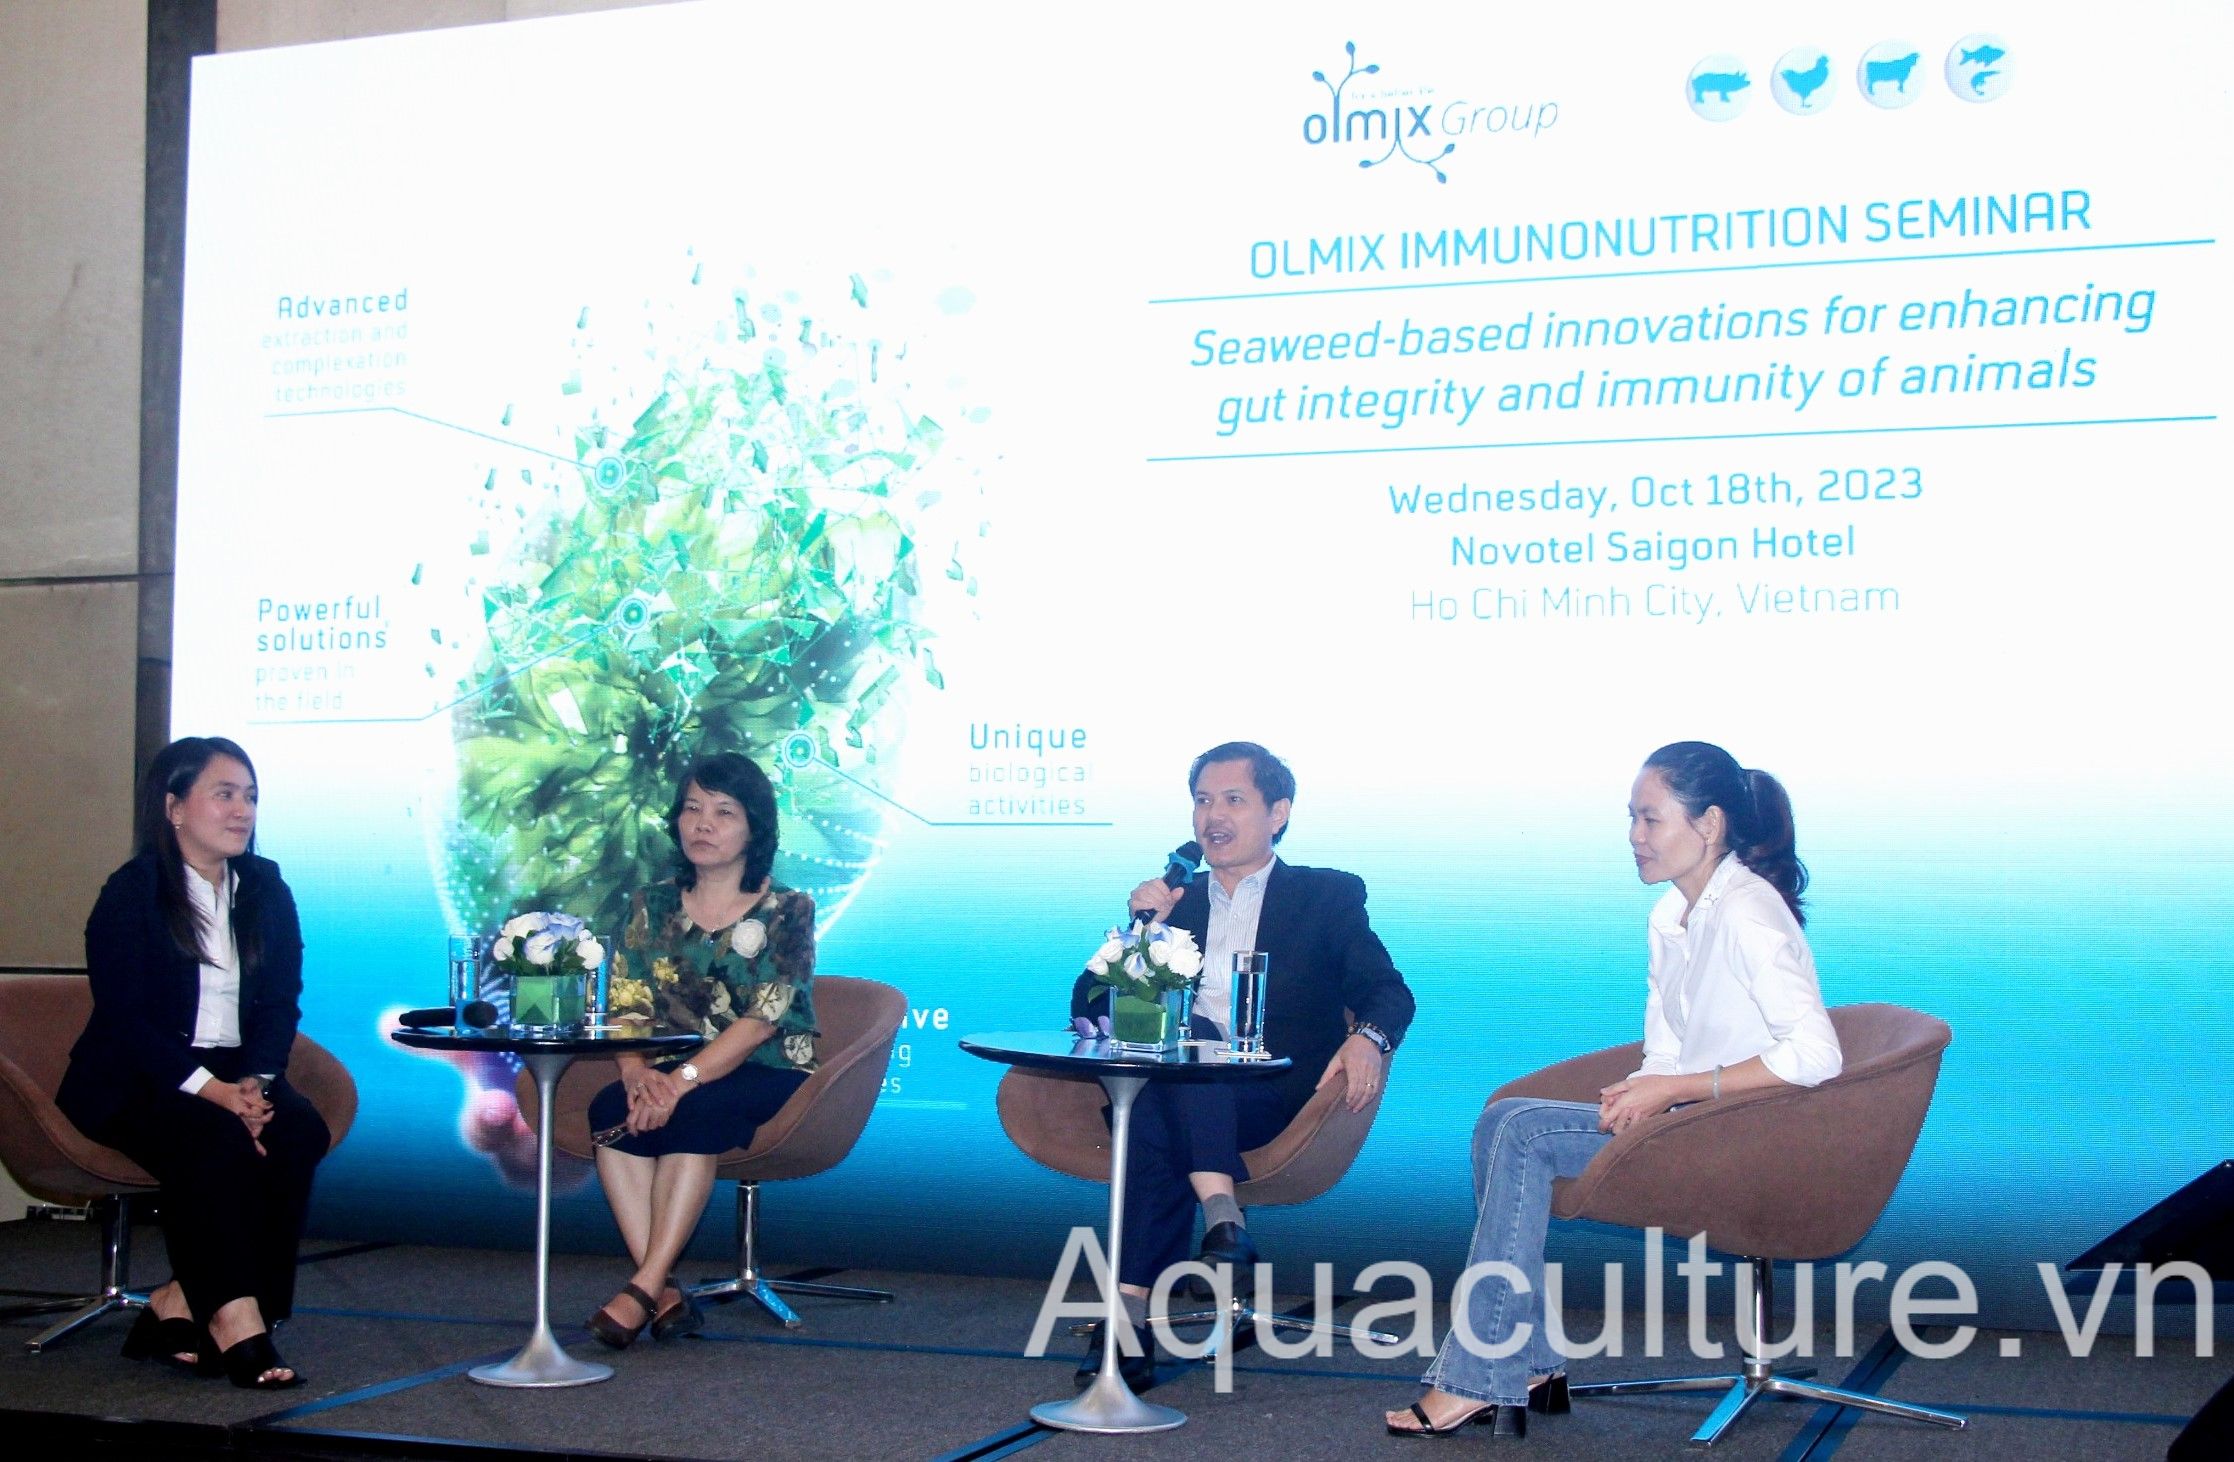 Hội thảo chủ đề “Những cải tiến của tảo biển giúp tăng cường tính nguyên vẹn của đường ruột và miễn dịch của vật nuôi” của Olmix ngày 18/10 tại TP. Hồ Chí Minh